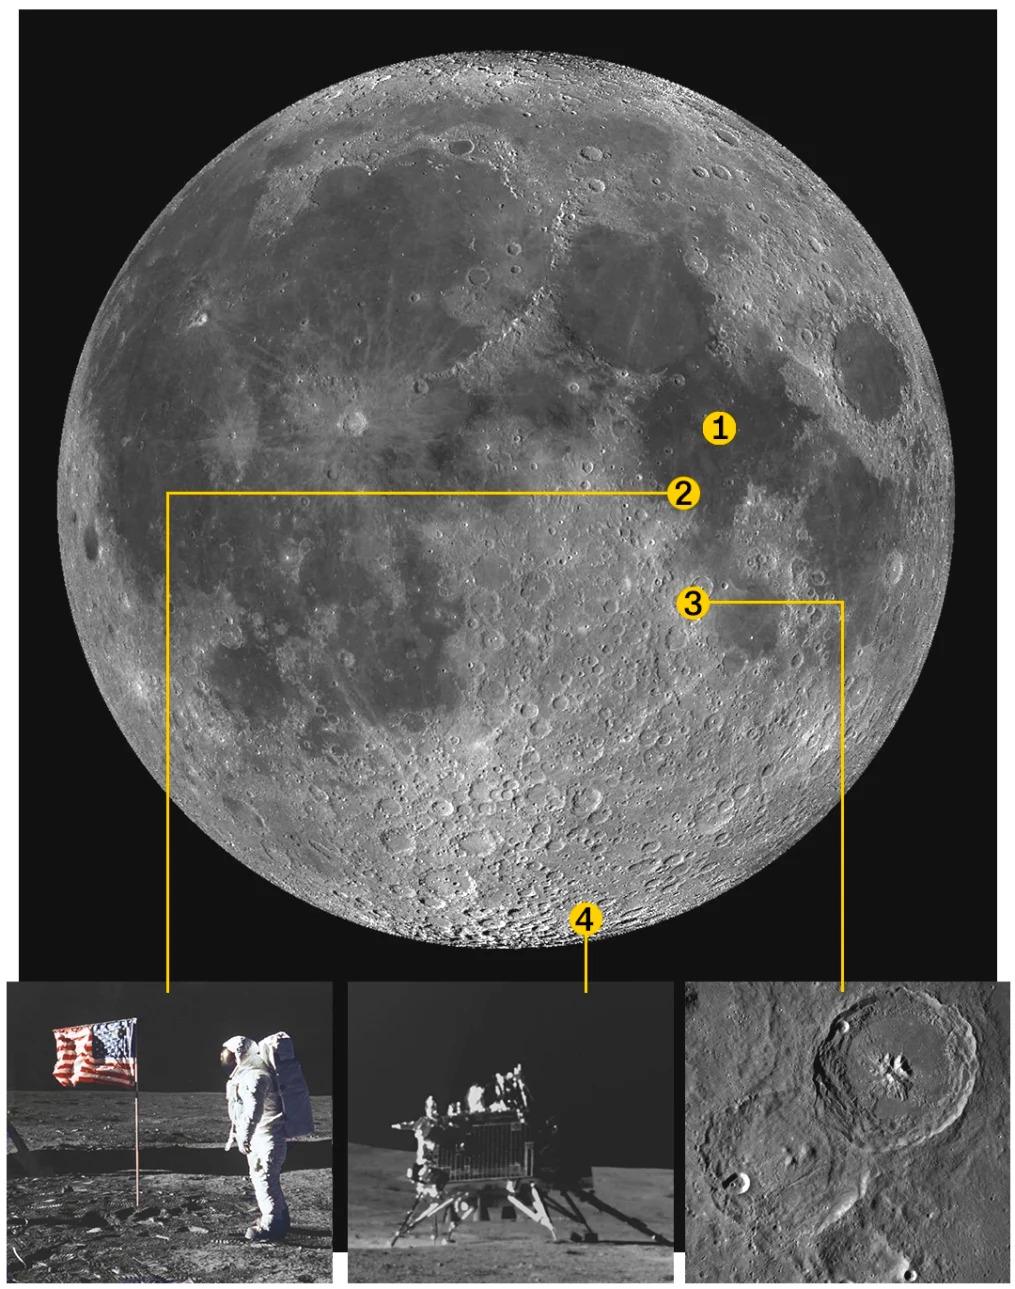 १. सी अफ ट्यान्क्विलिटी २. एपोलो ११ अवतरण क्षेत्र ३. मुन स्‍नाइपरको अवतरण क्षेत्र ४. चन्द्रयान-३ अवरतण क्षेत्र                                                                         तस्विर स्रोत: सीएनएन